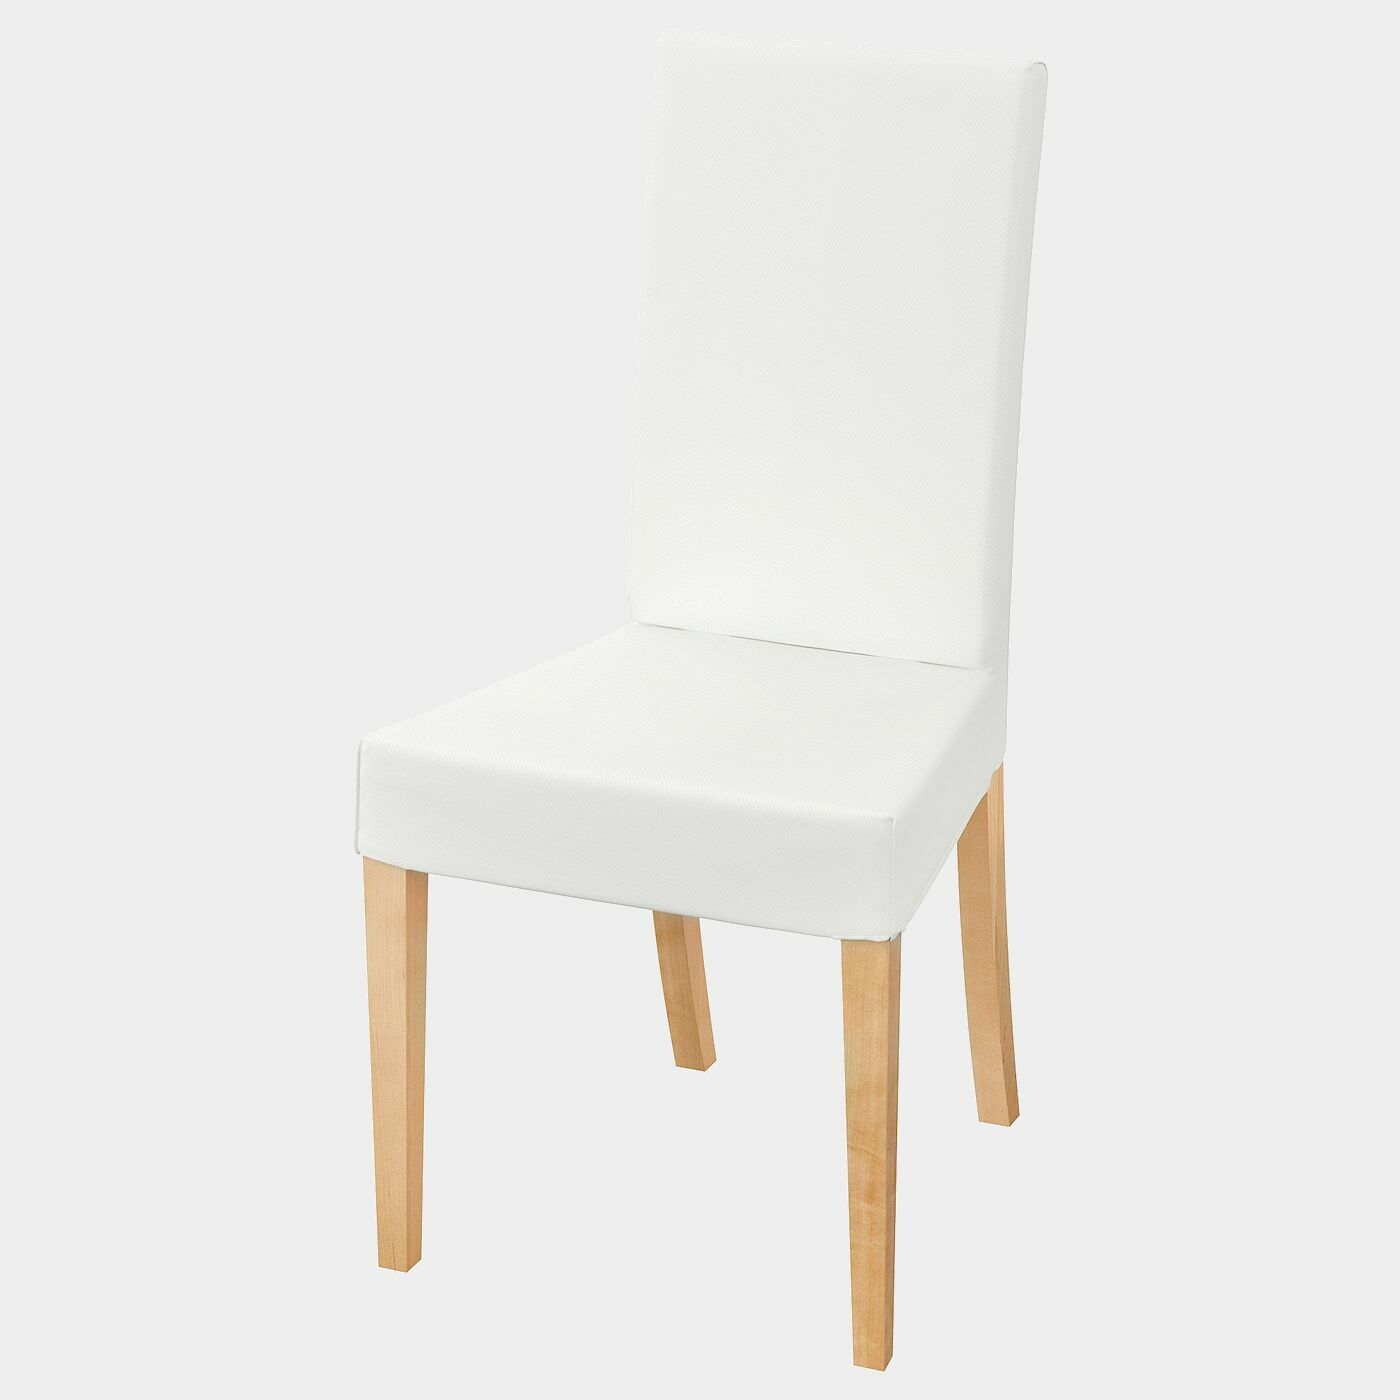 HARRY Stuhl  - Esszimmerstühle - Möbel Ideen für dein Zuhause von Home Trends. Möbel Trends von Social Media Influencer für dein Skandi Zuhause.